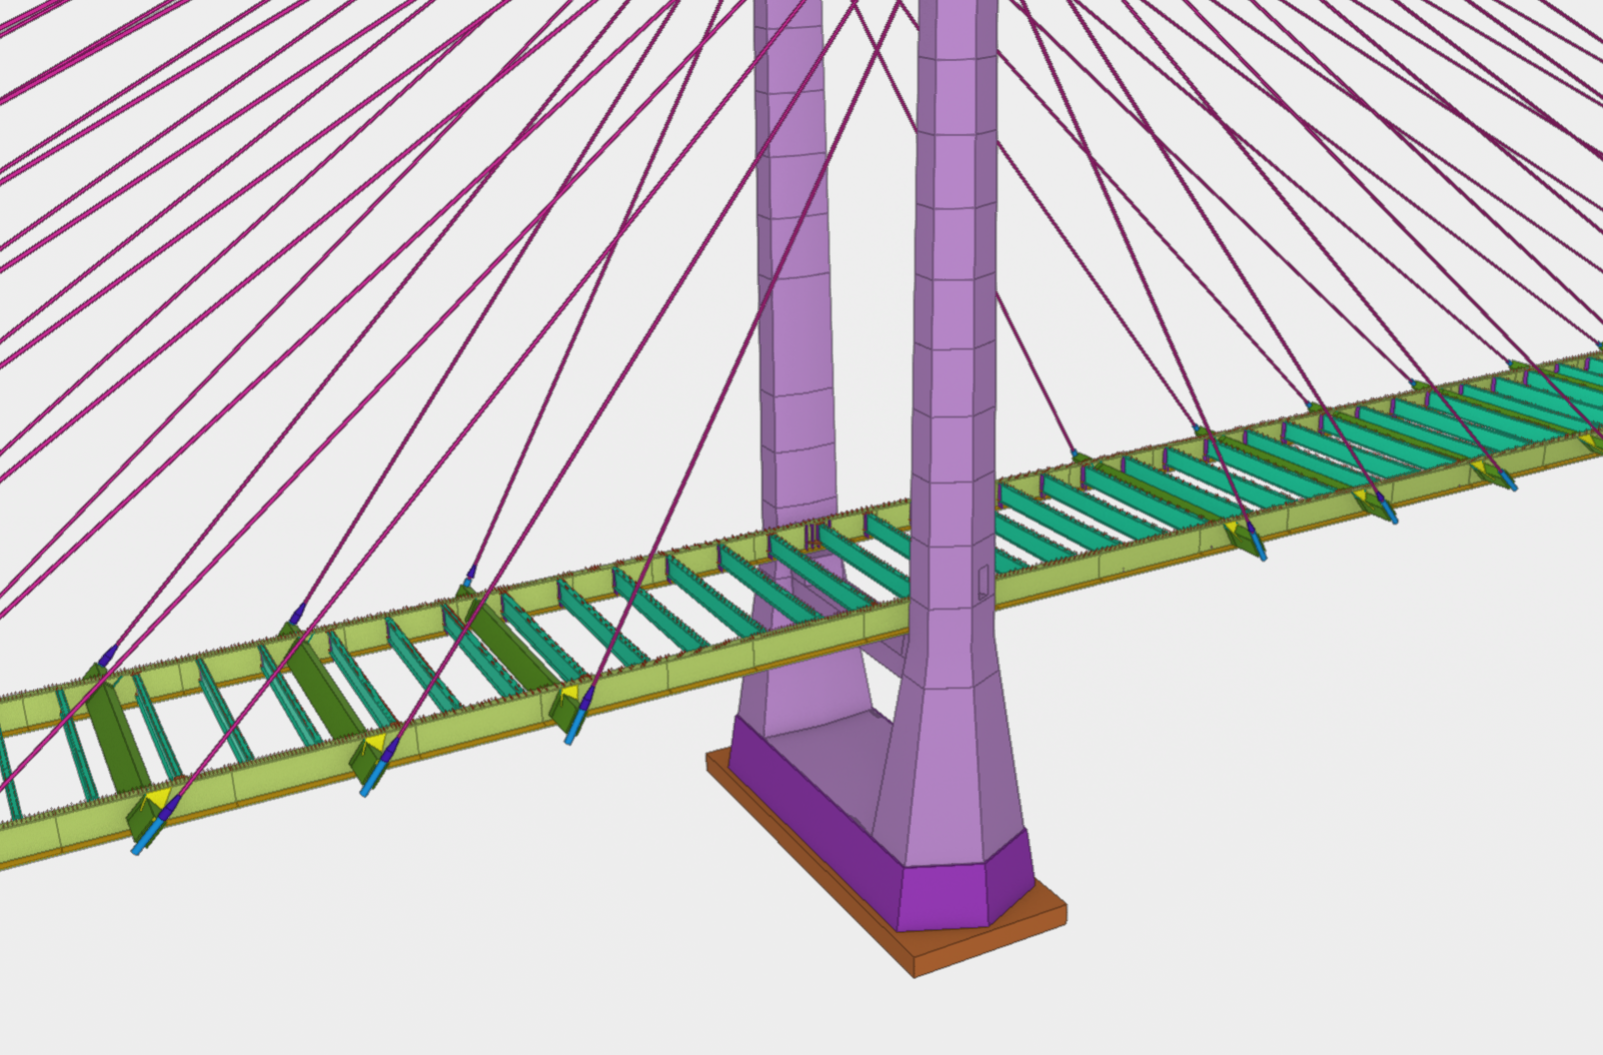 brodäckets stålkonstruktion vågrätt och utmärkt med grön färg, i bilden även pylonerna och kablarna.